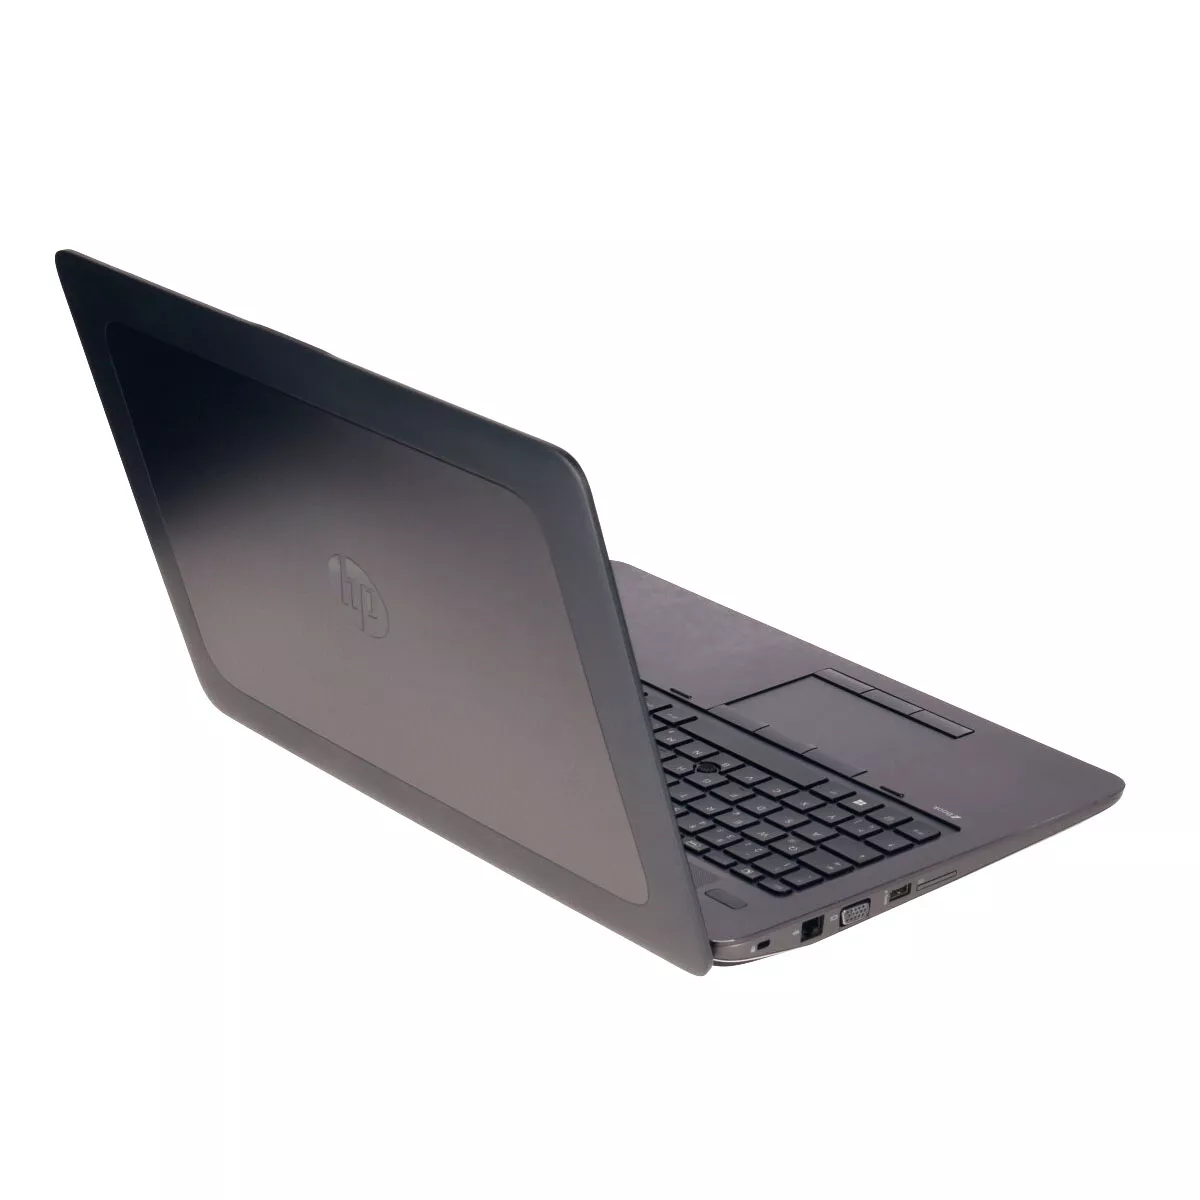 HP ZBook 15 G2 Core i7 4610M 3,0 GHz Webcam